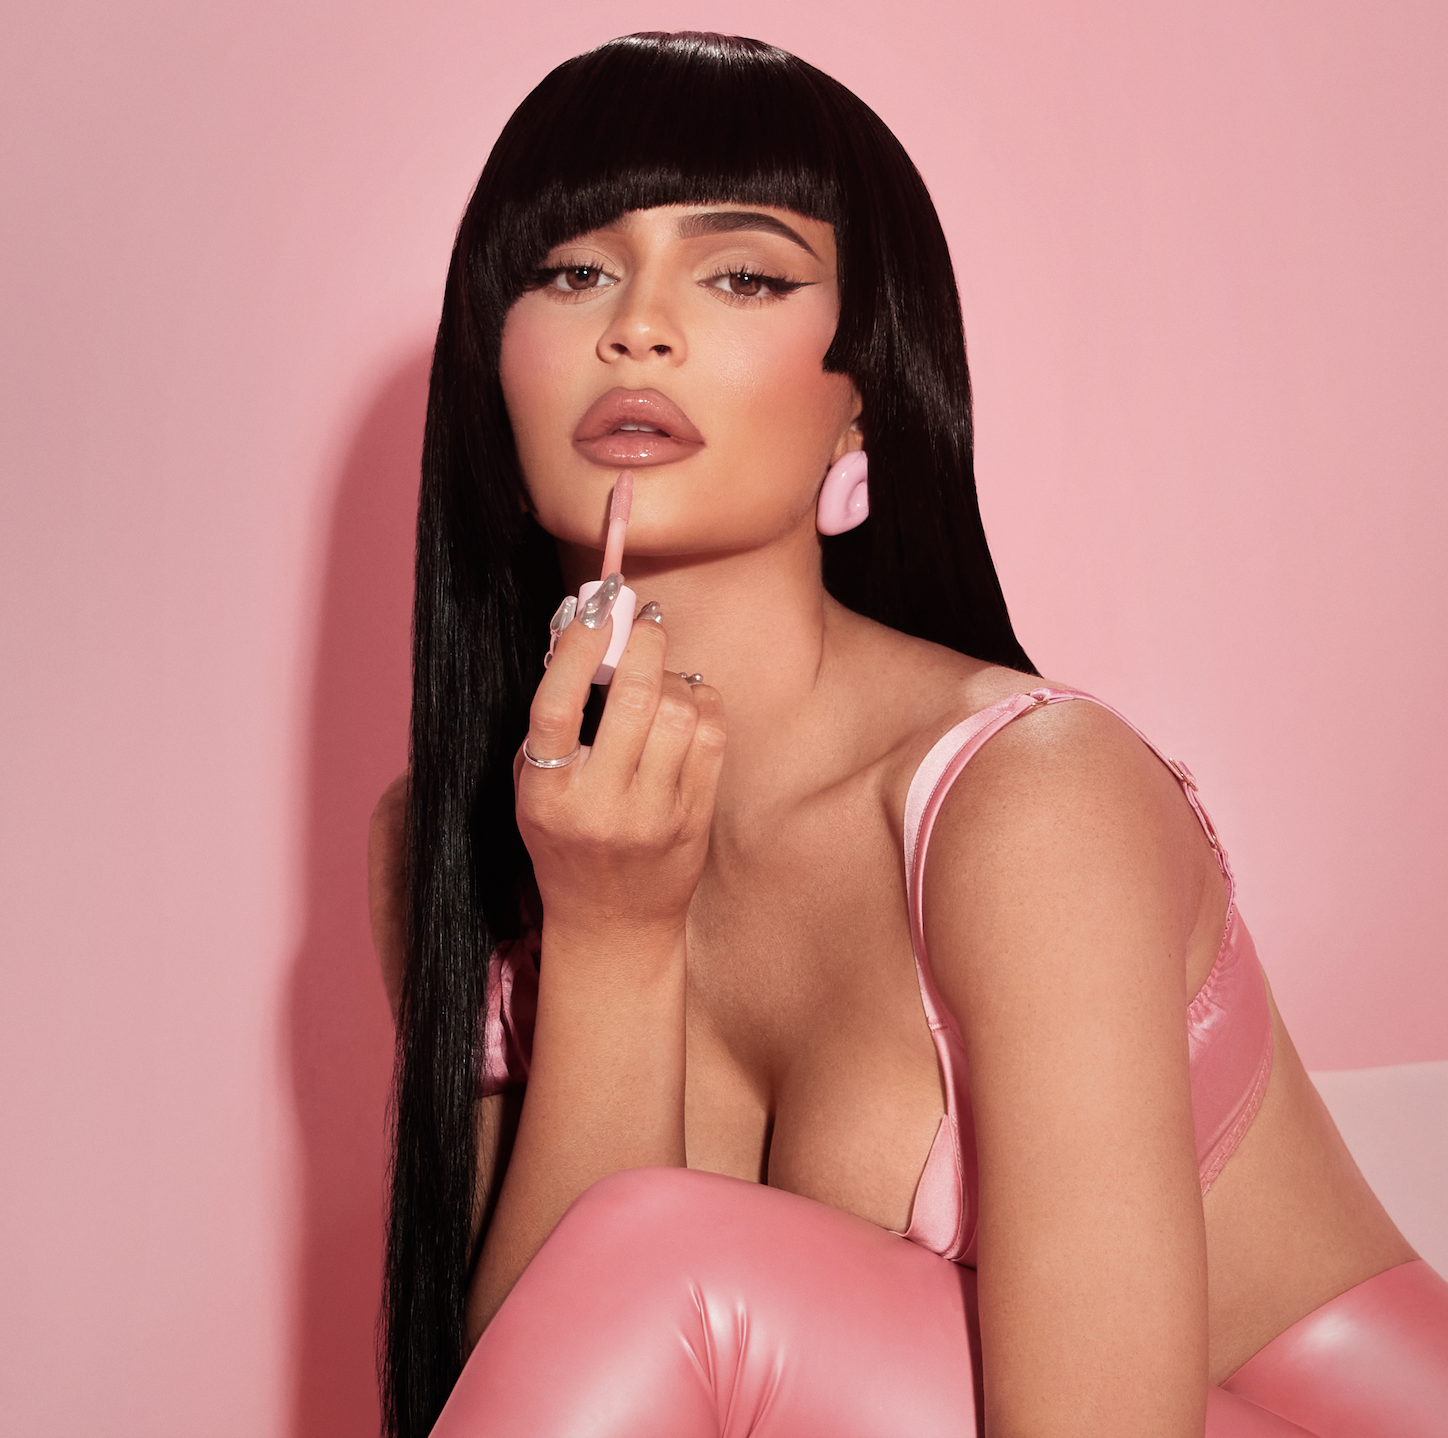 Kylie Jenner acaba de relanzar Kylie Cosmetics con todos los productos nuevos